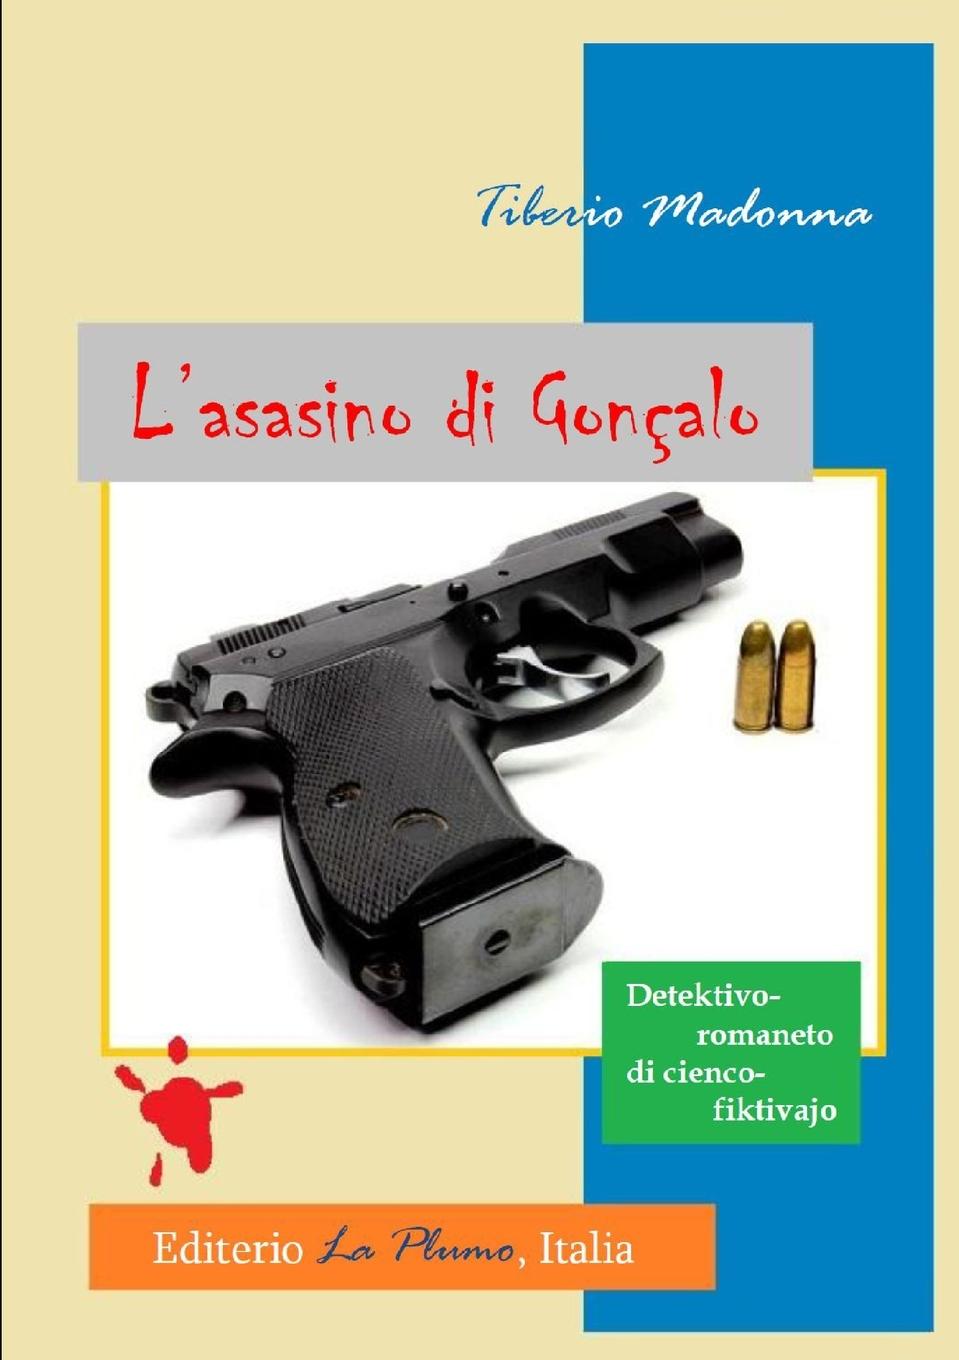 Книга L'asasino di Goncalo Tiberio Madonna